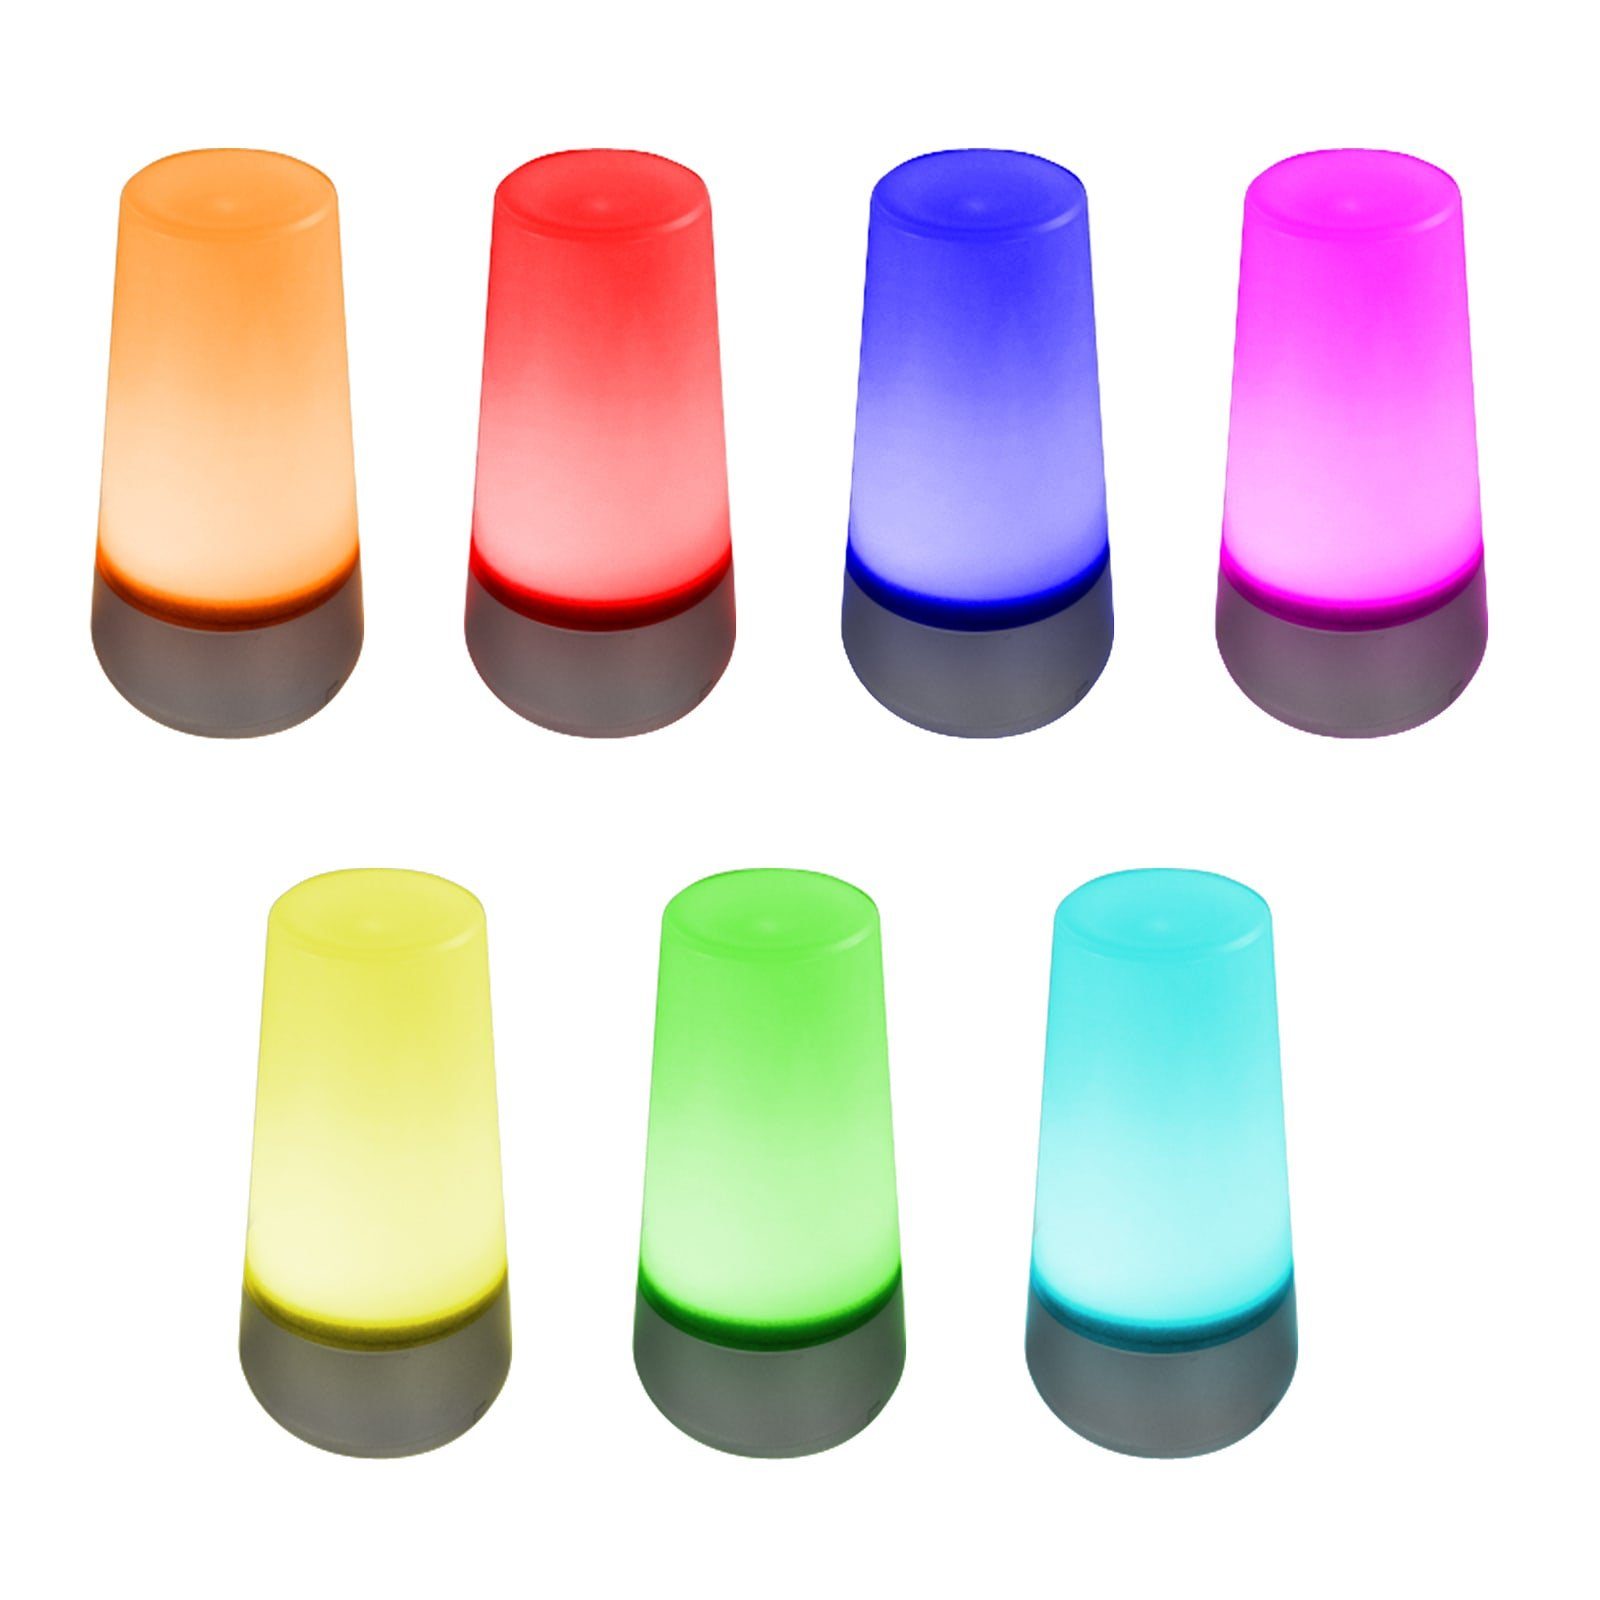 integriert, Lichtstreuung LED 360° fest mit LED RGB-Farbwechsel, Farbenpracht, Wunderschöne EAXUS RGB-Farbwechsel, - Stimmungslicht Nachtlicht/Nachttischlampe, Tischleuchte